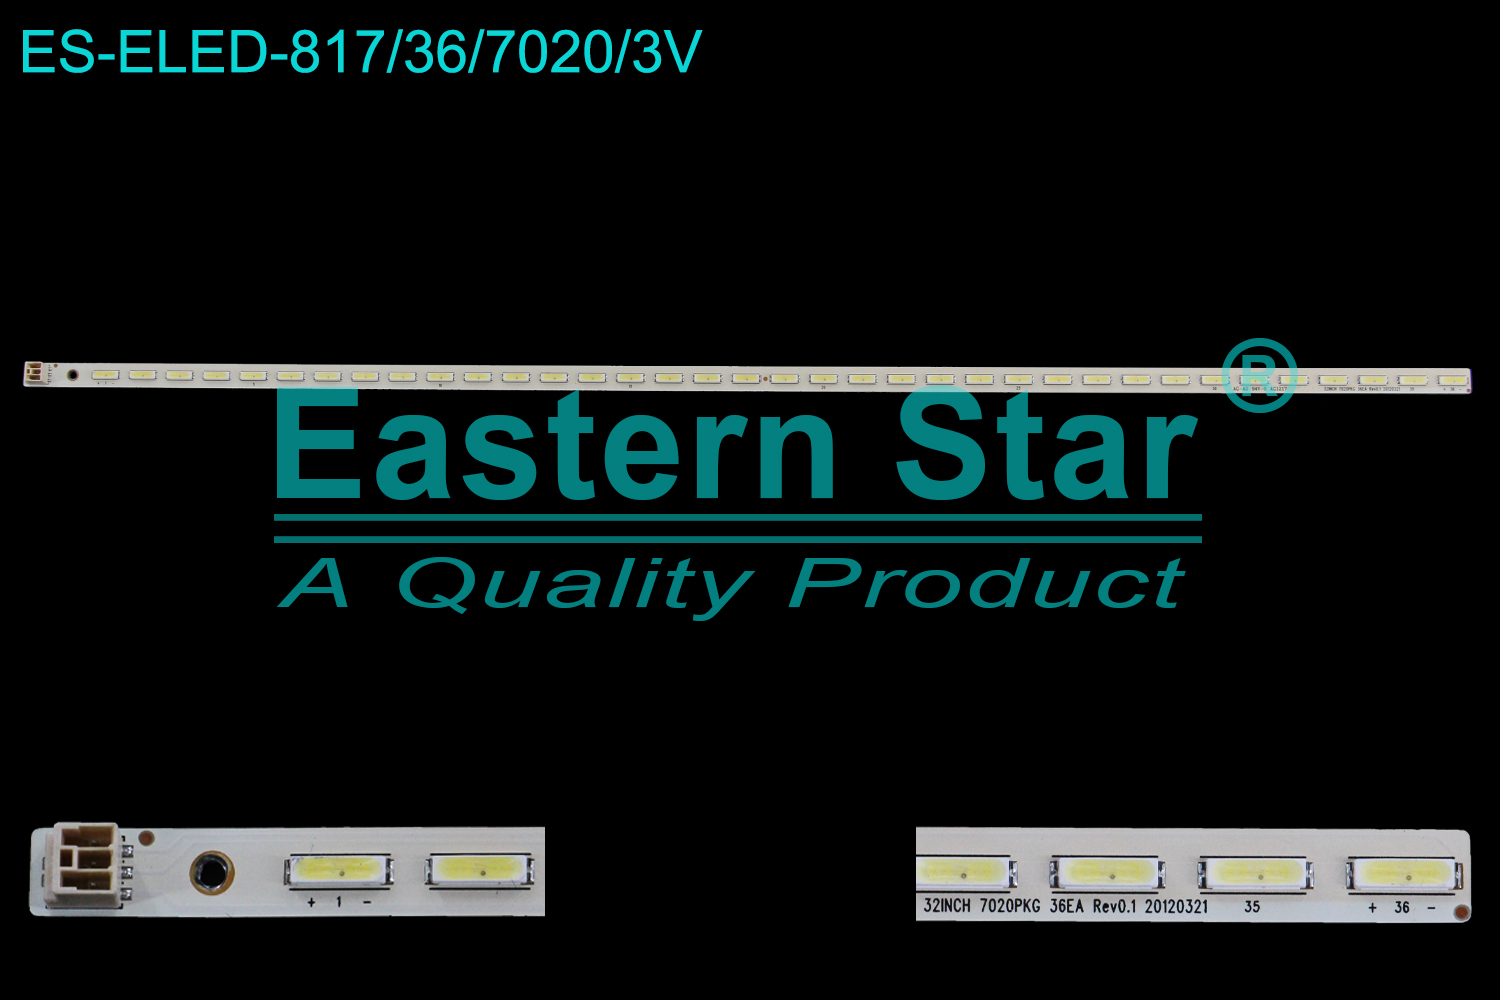 ES-ELED-817 ELED/EDGE TV backlight use for 32'' Lg VES315WNES-02-B, VES315WNET-02 32INCH 7020PKG 36EA Rev0.1 20120321 LED STRIPS(2)